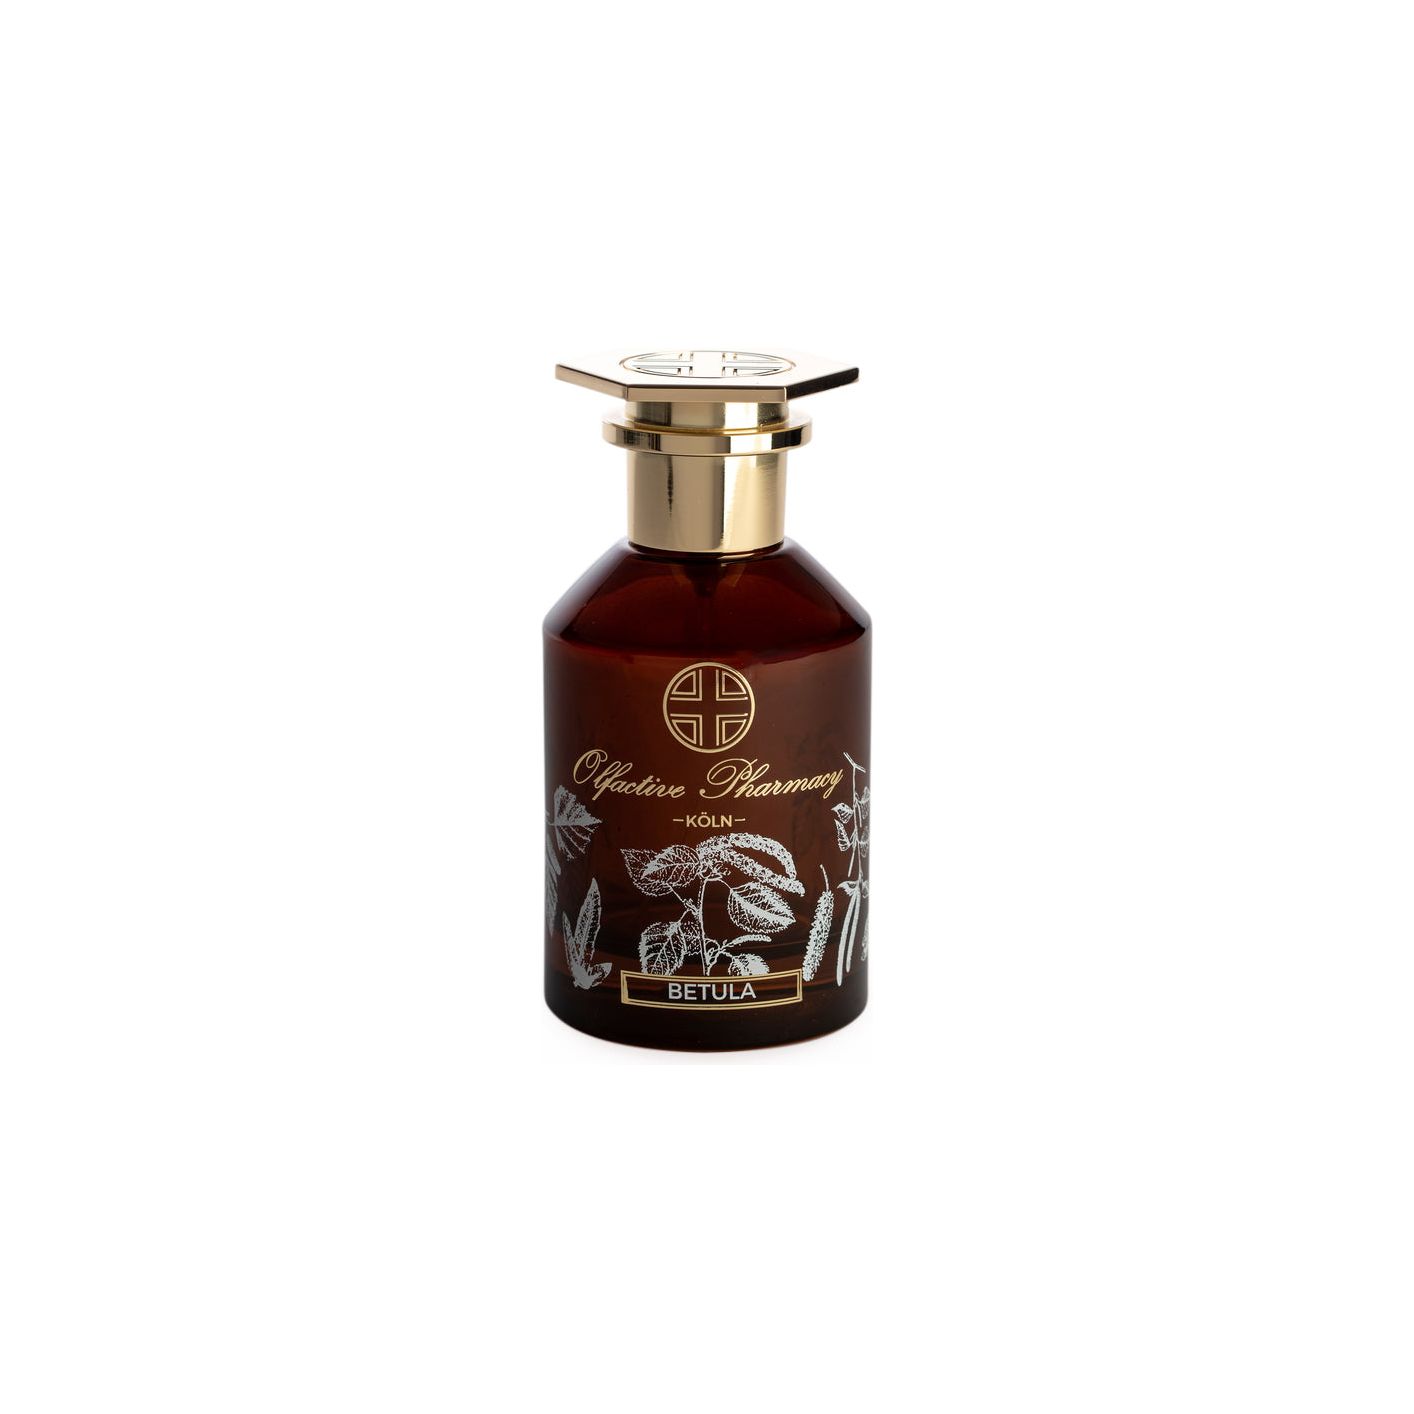 Olfactive Pharmacy - Betula - Parfum de Sante - Eau de Parfum